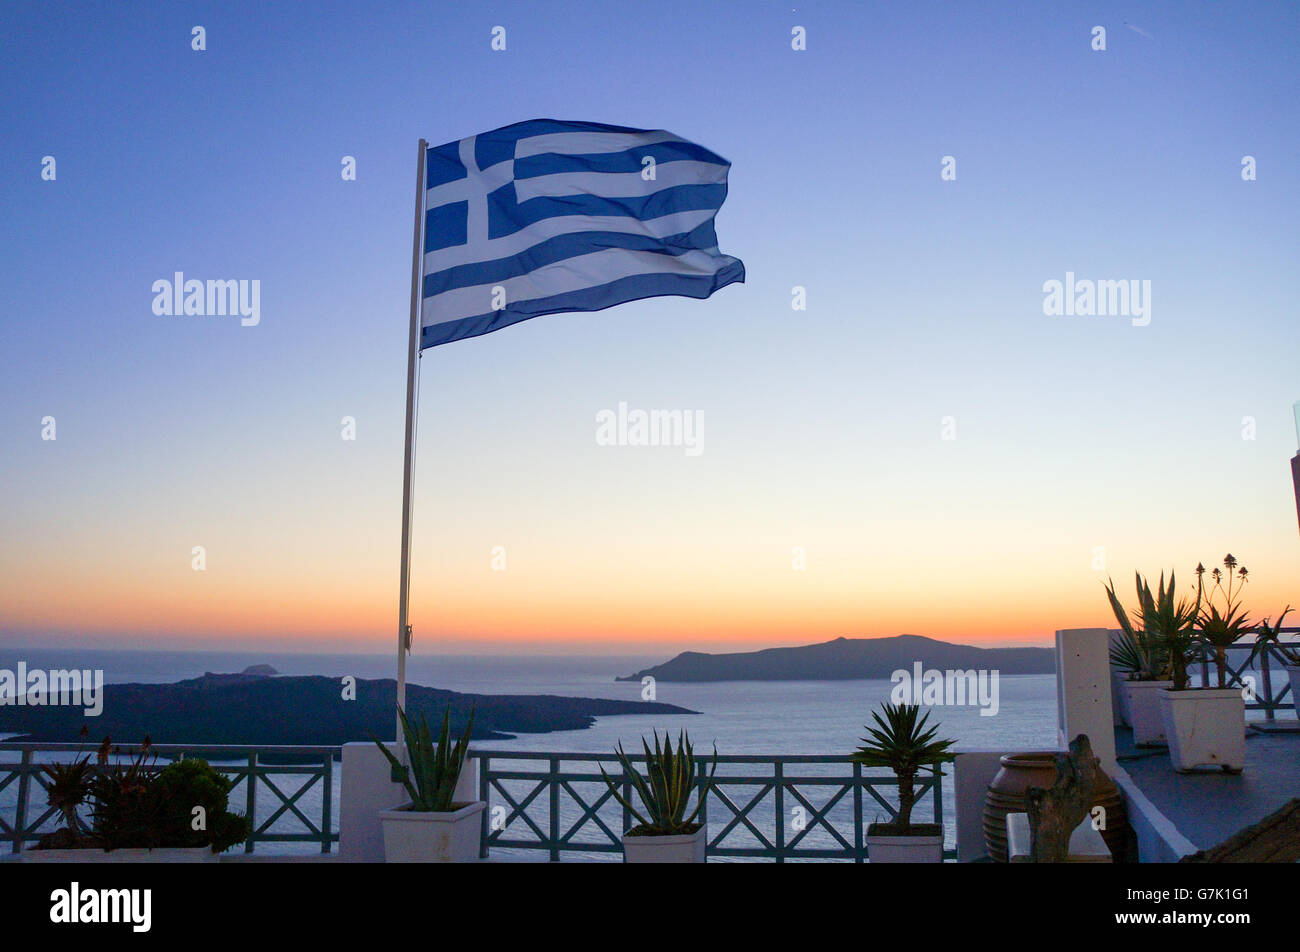 Drapeau grec à la mer contre l'heure du coucher du soleil Ciel clair Banque D'Images